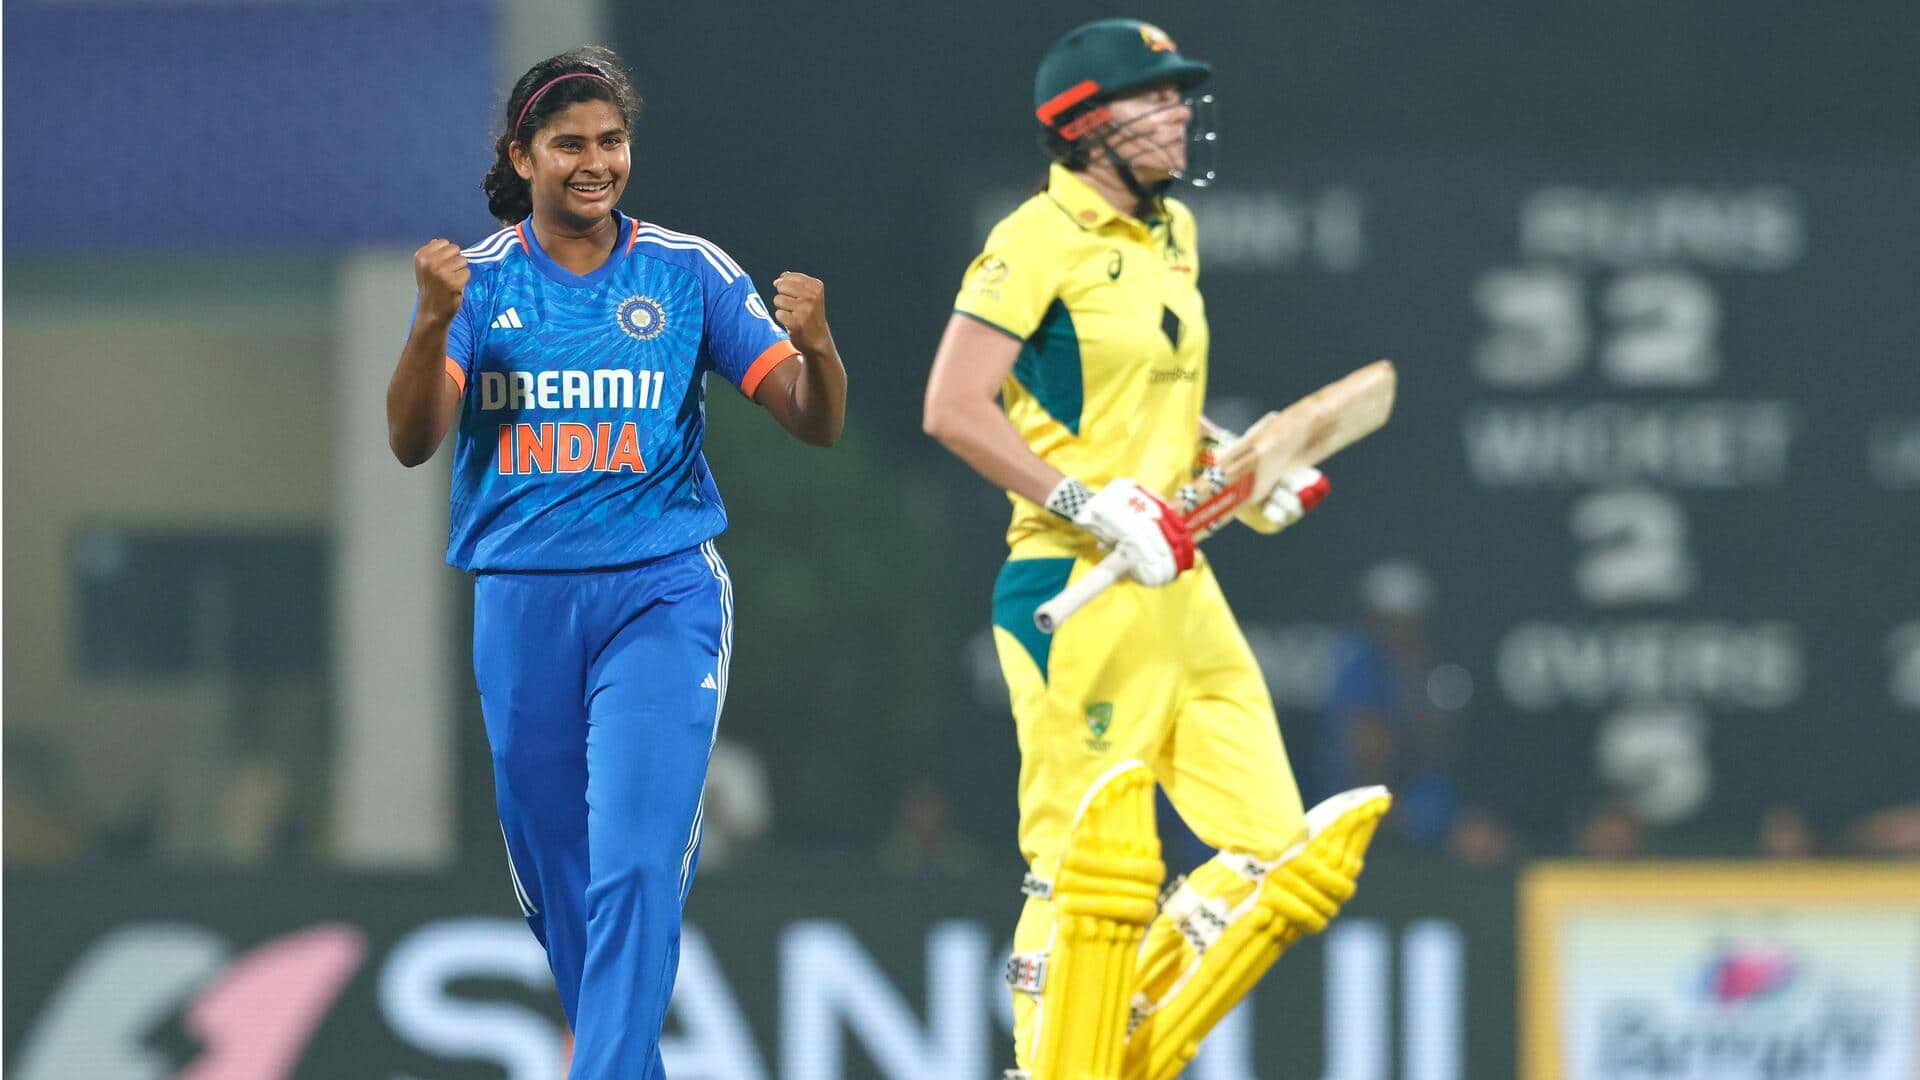 महिला क्रिकेट, भारत बनाम ऑस्ट्रेलिया: तितास साधु ने चटकाए 4 विकेट, जानिए आंकड़े